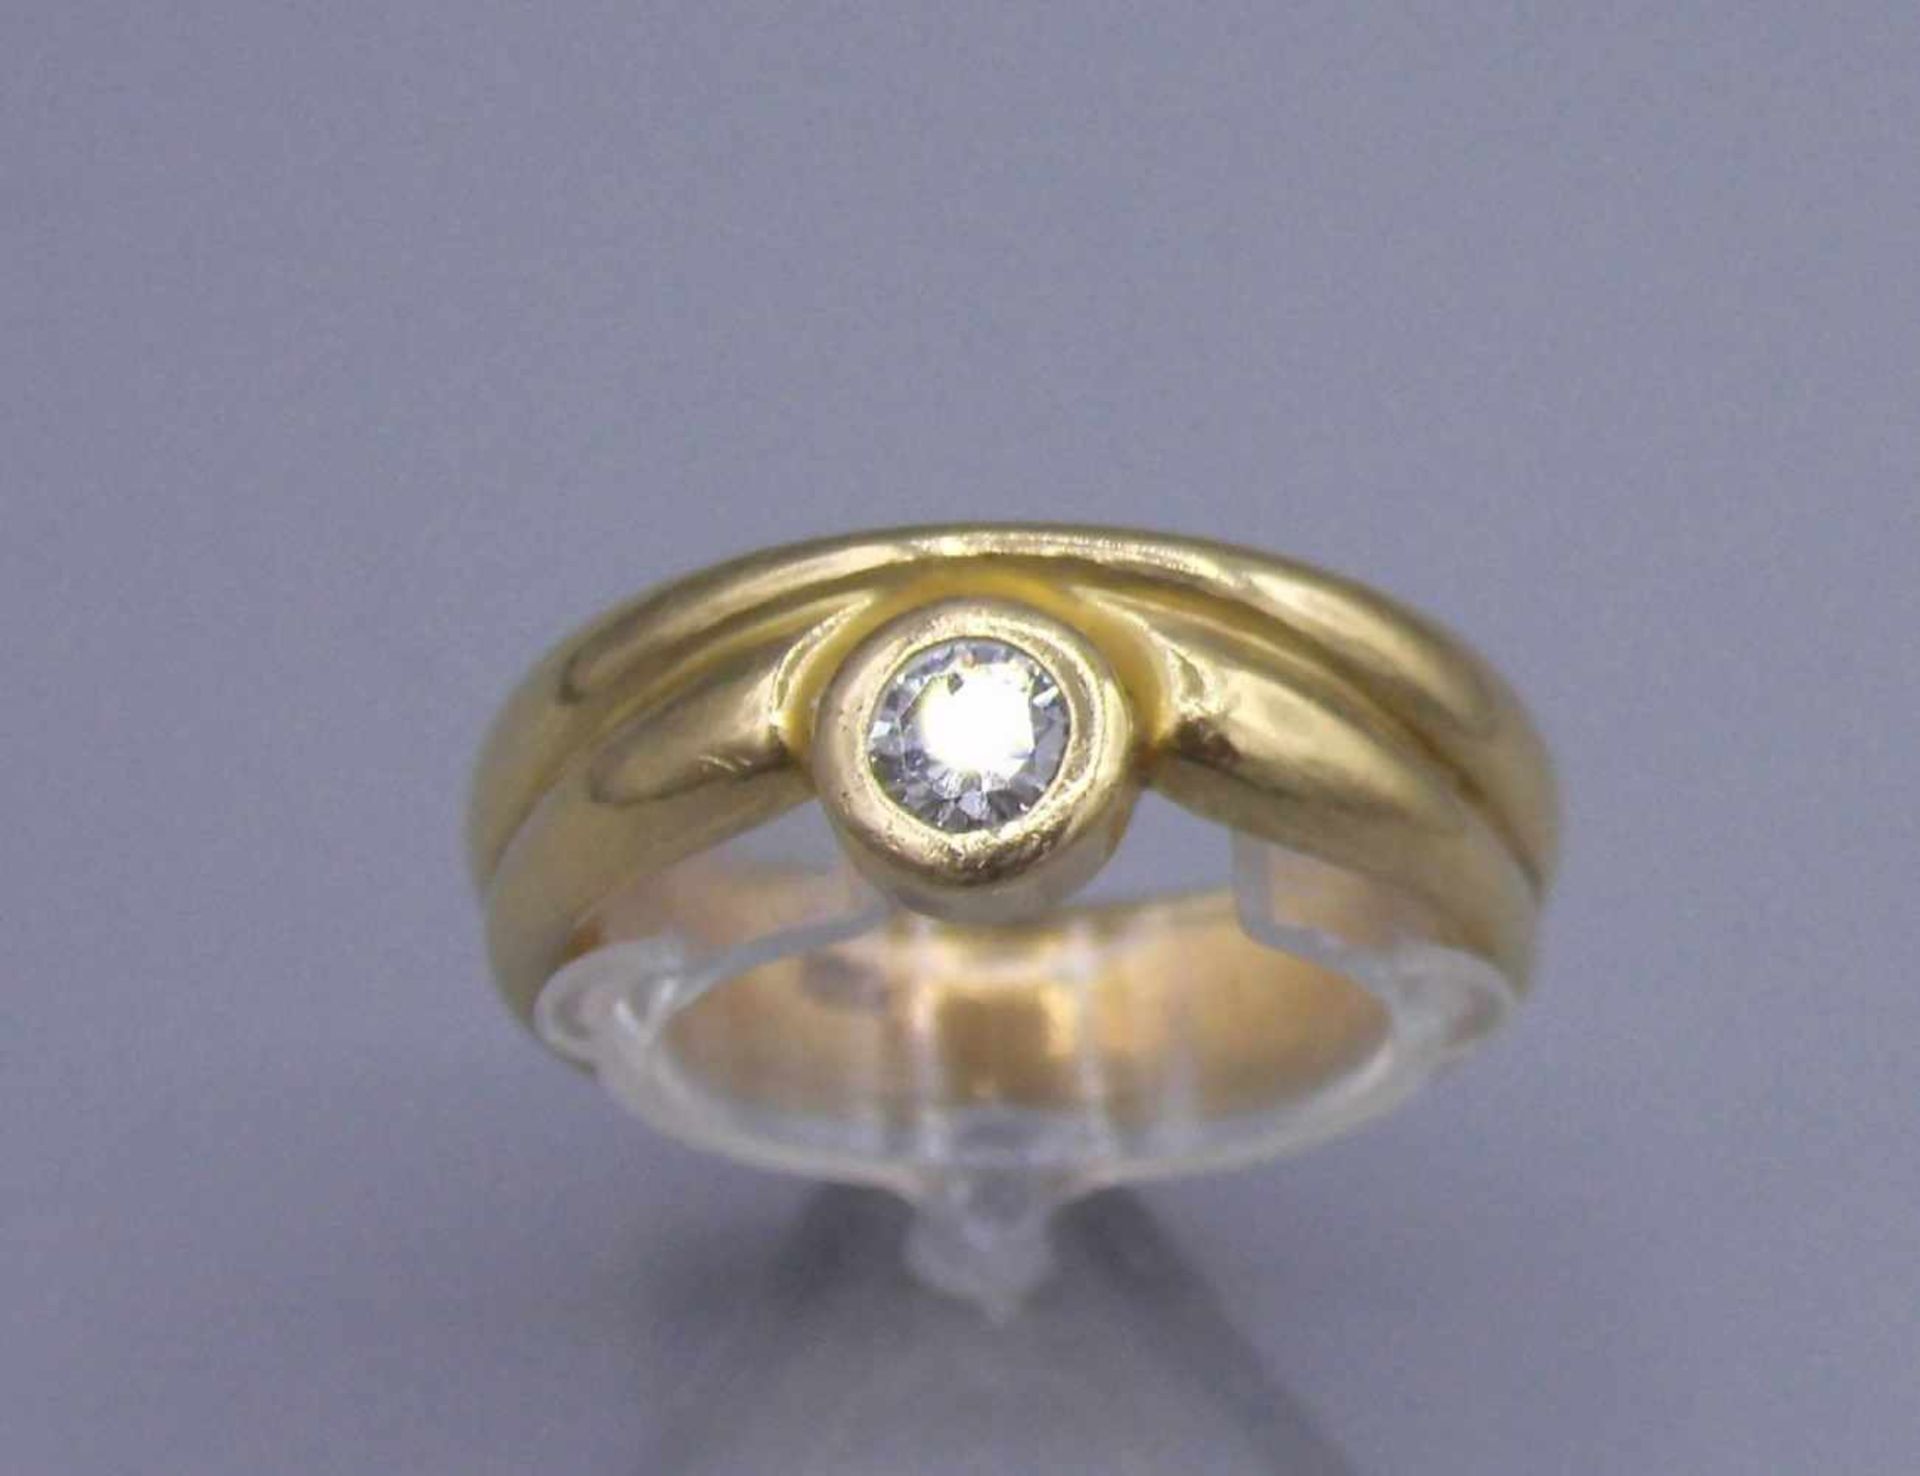 RING, 750er Gelbgold (12,15 g), besetzt mit einem Brillanten von ca. 0,2 ct.; Ring-Gr. 55/56. - Image 2 of 4